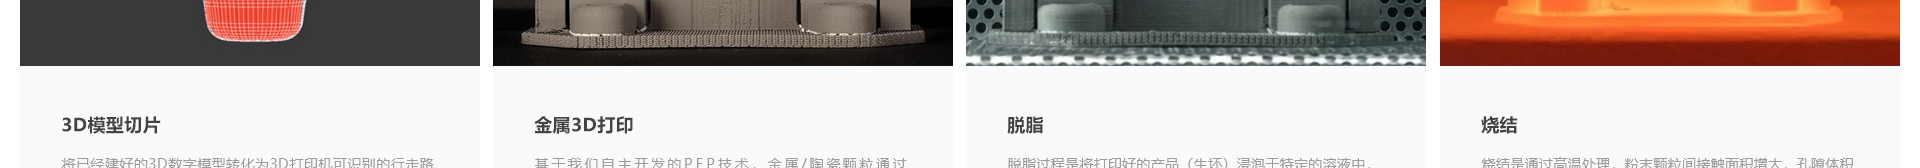 3D打印行业案例_网站建设公司_深圳网站开发_响应式网站建设案例